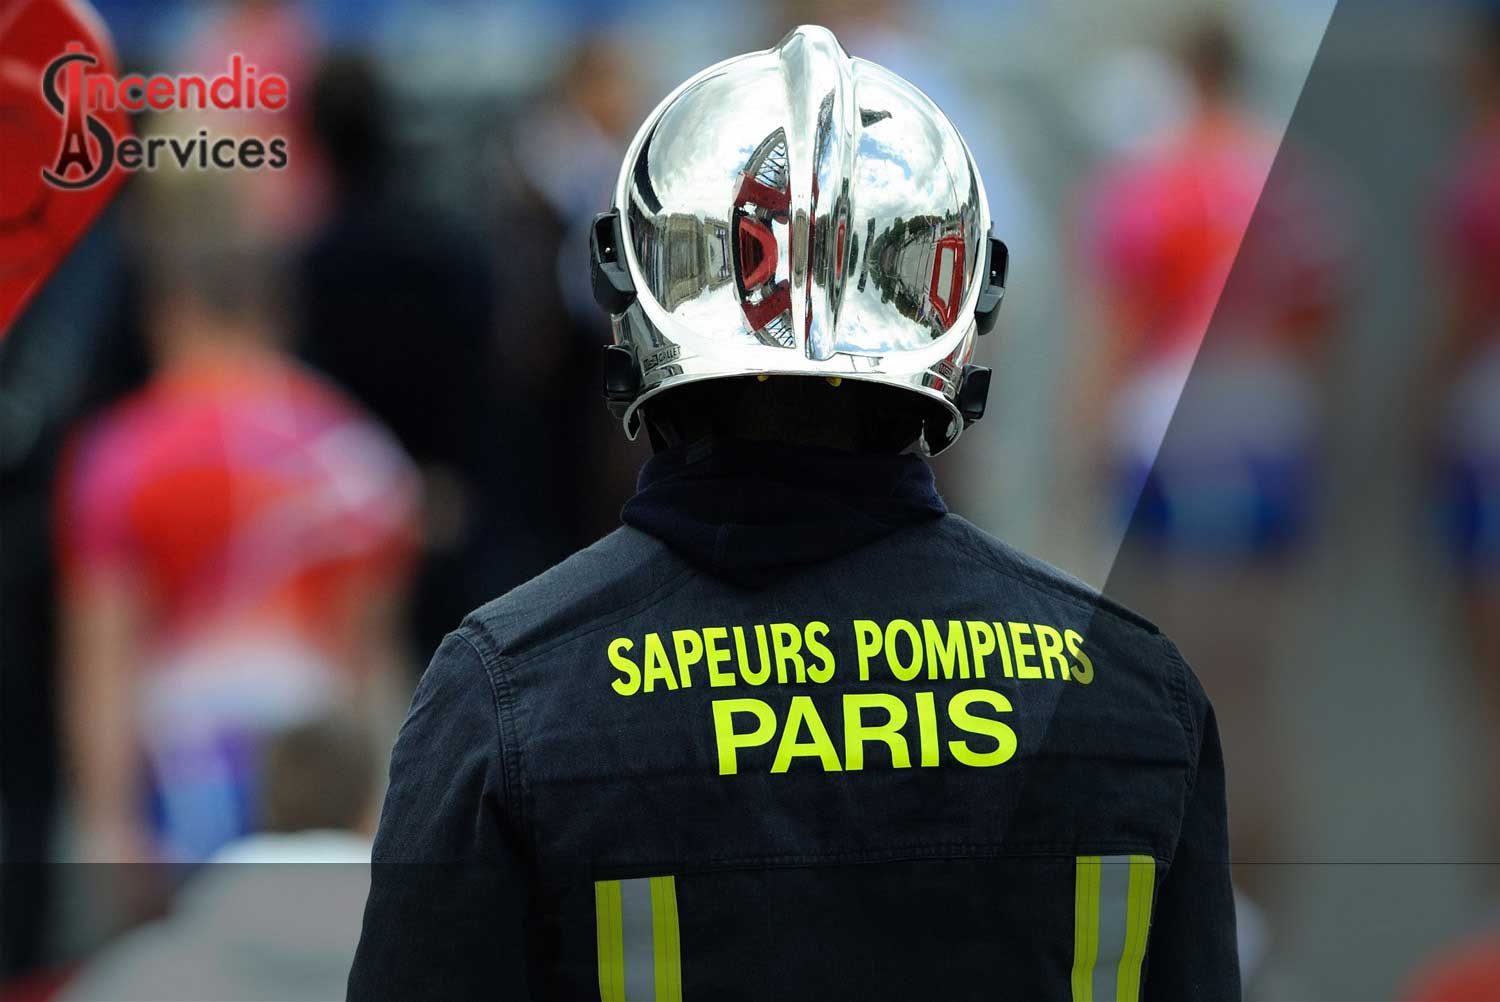 MAINTENANCE EXTINCTEUR PARIS 15 - Entreprise Certifiée | Incendie Services à Paris 75015